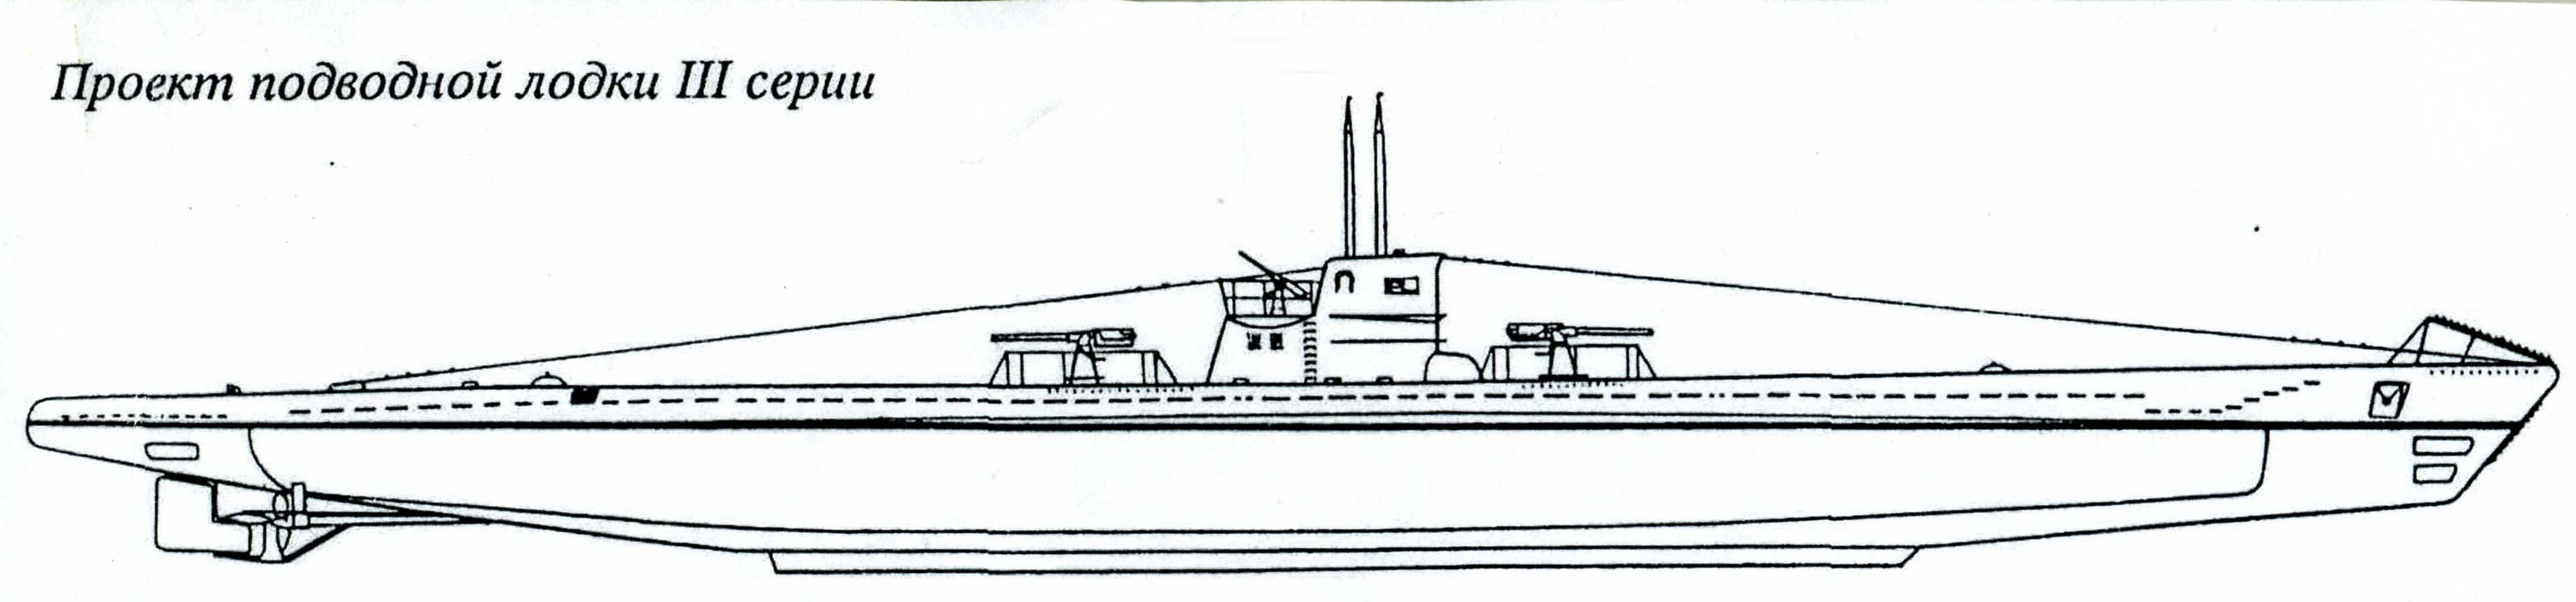 Подводные лодки типа IX чертеж